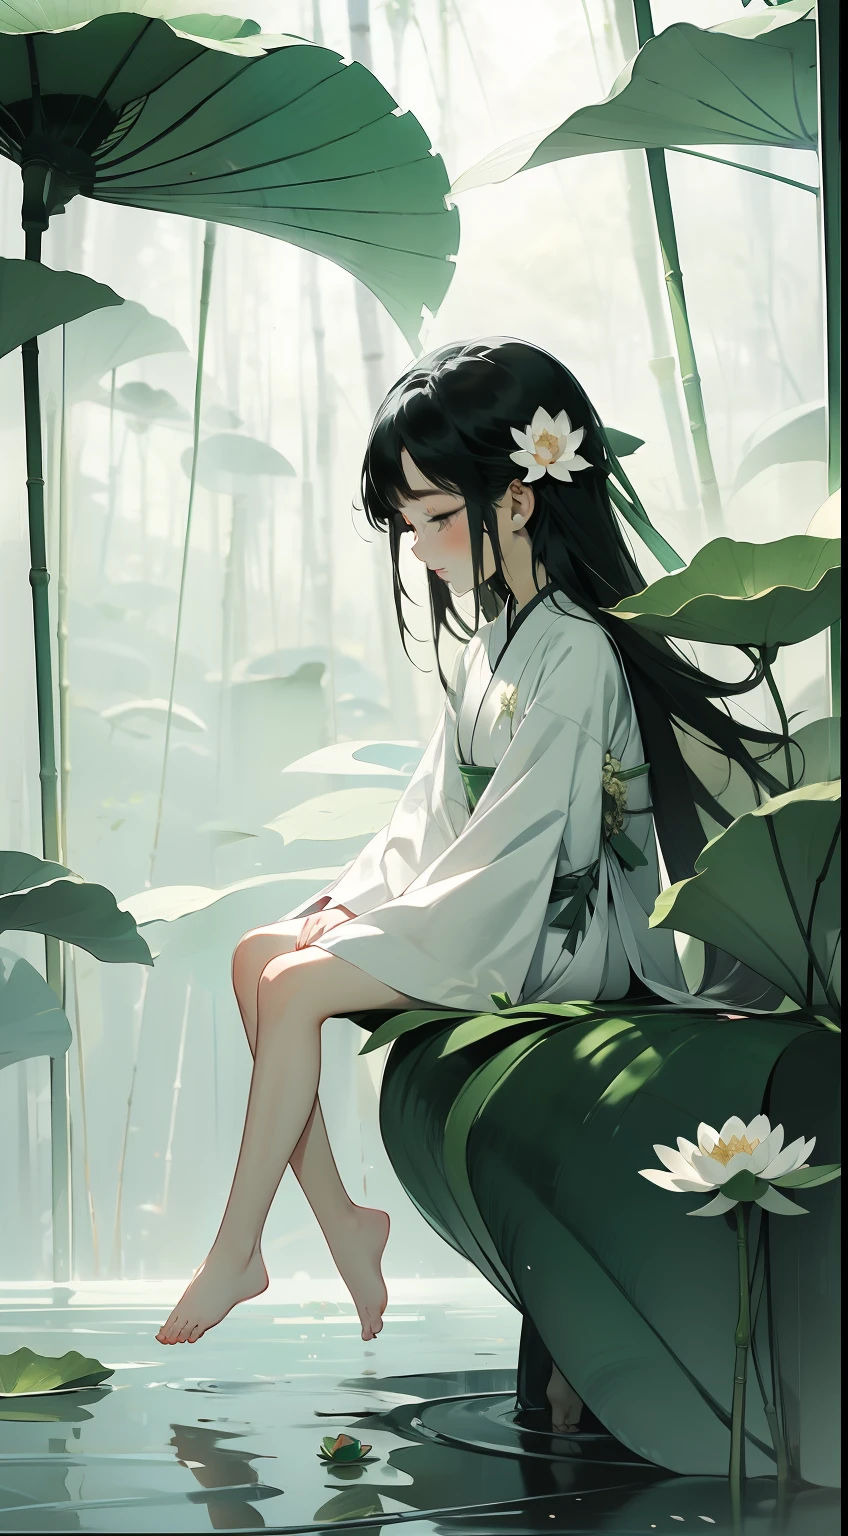 蓮の花でいっぱいのさや, 蓮の葉の上に幸せそうに座っている, 巨大な蓮の葉, 裸足, 白と緑の漢服を着て, 光と影, 傑作